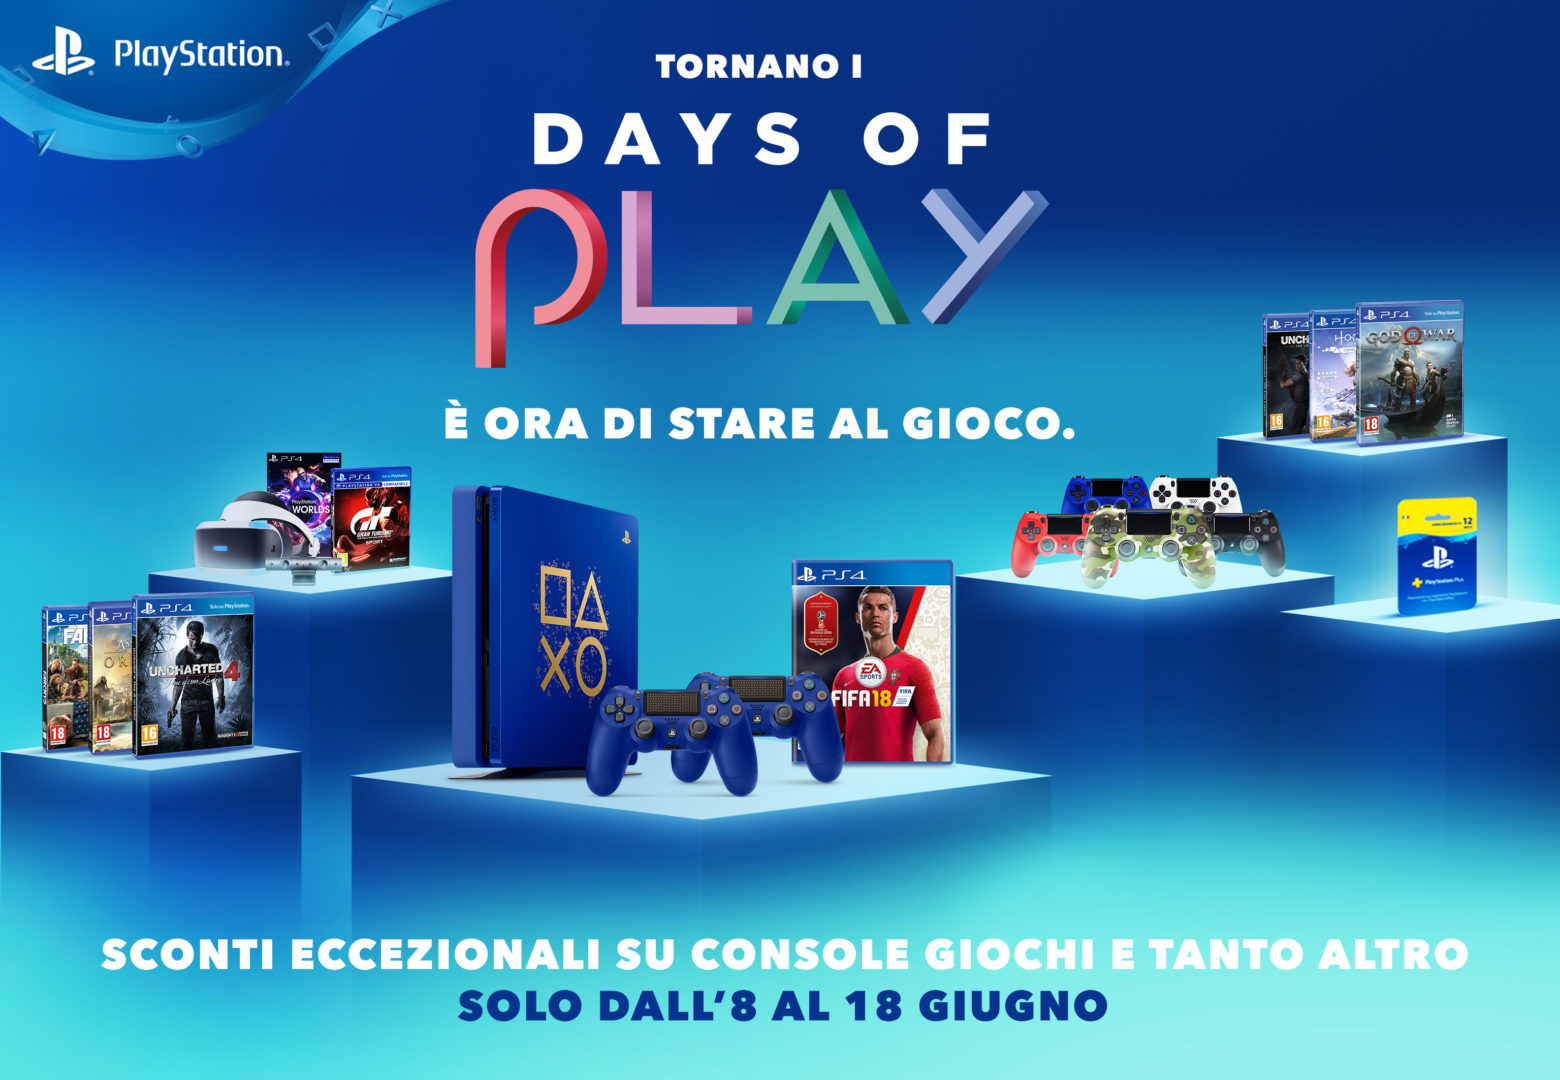 Days of Play, iniziano oggi undici giorni che PlayStation dedica ai